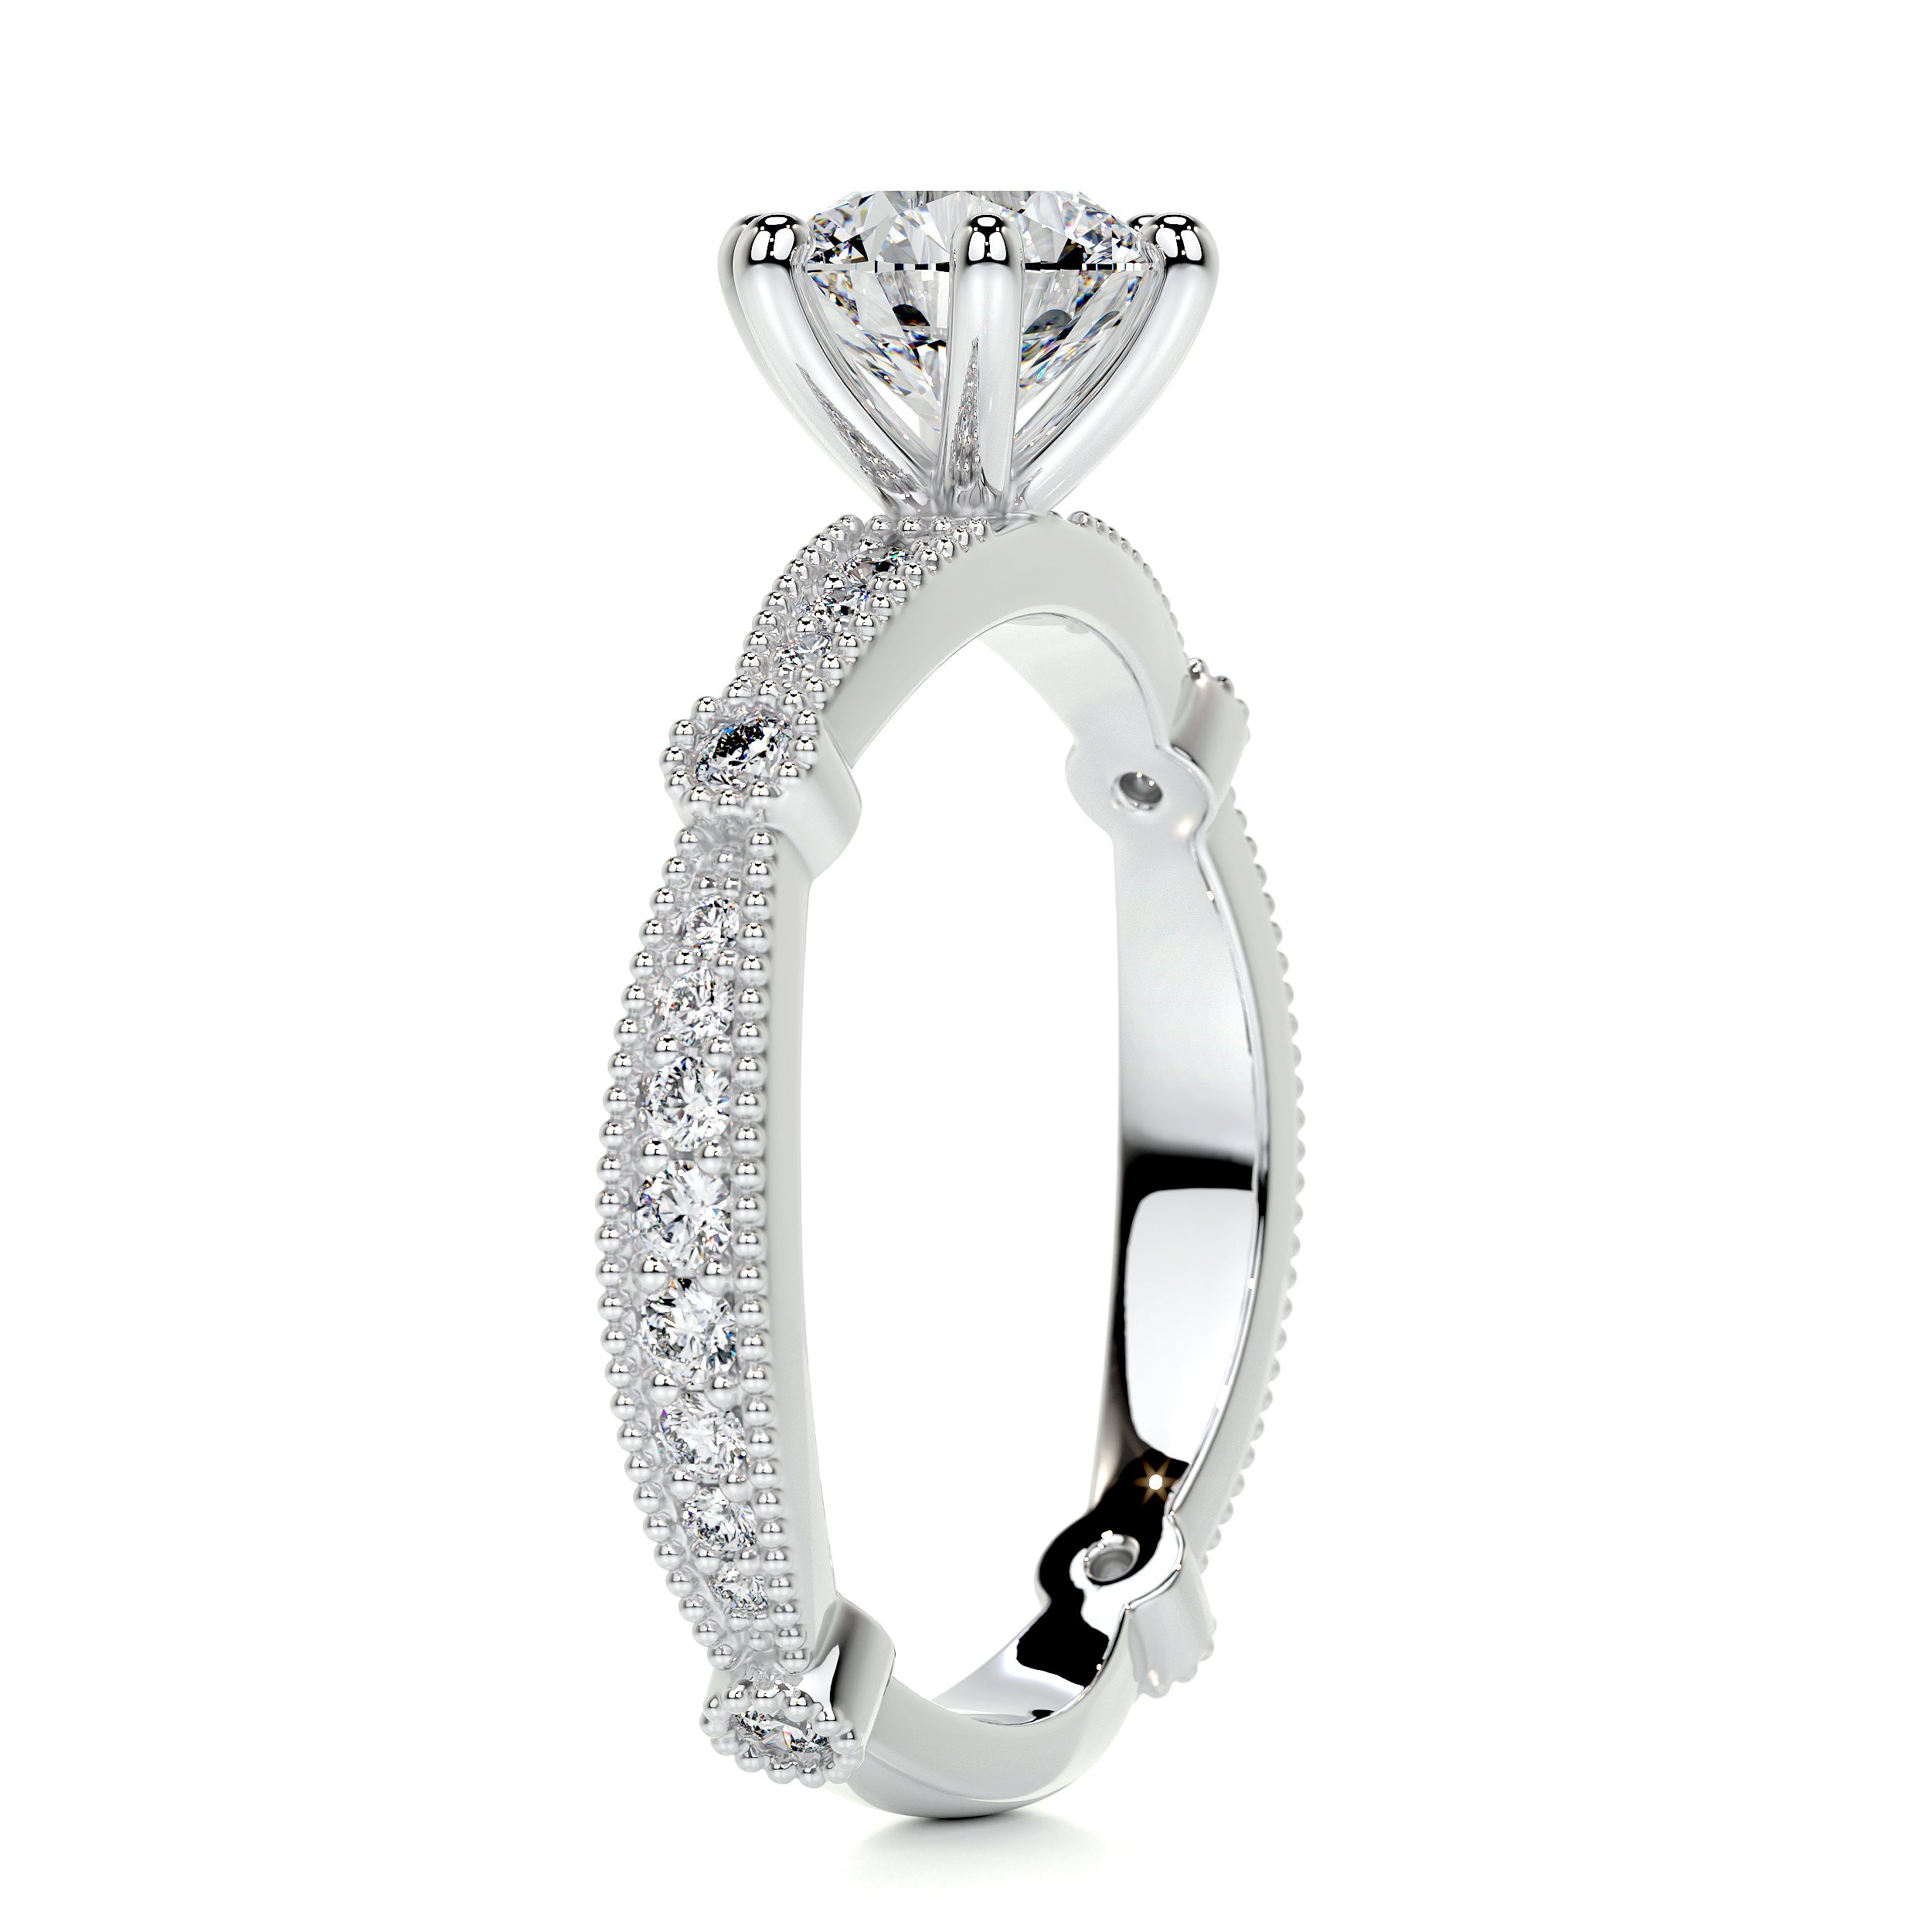 Stacy Moissanite & Diamonds Ring   (1.30 Carat) -14K White Gold